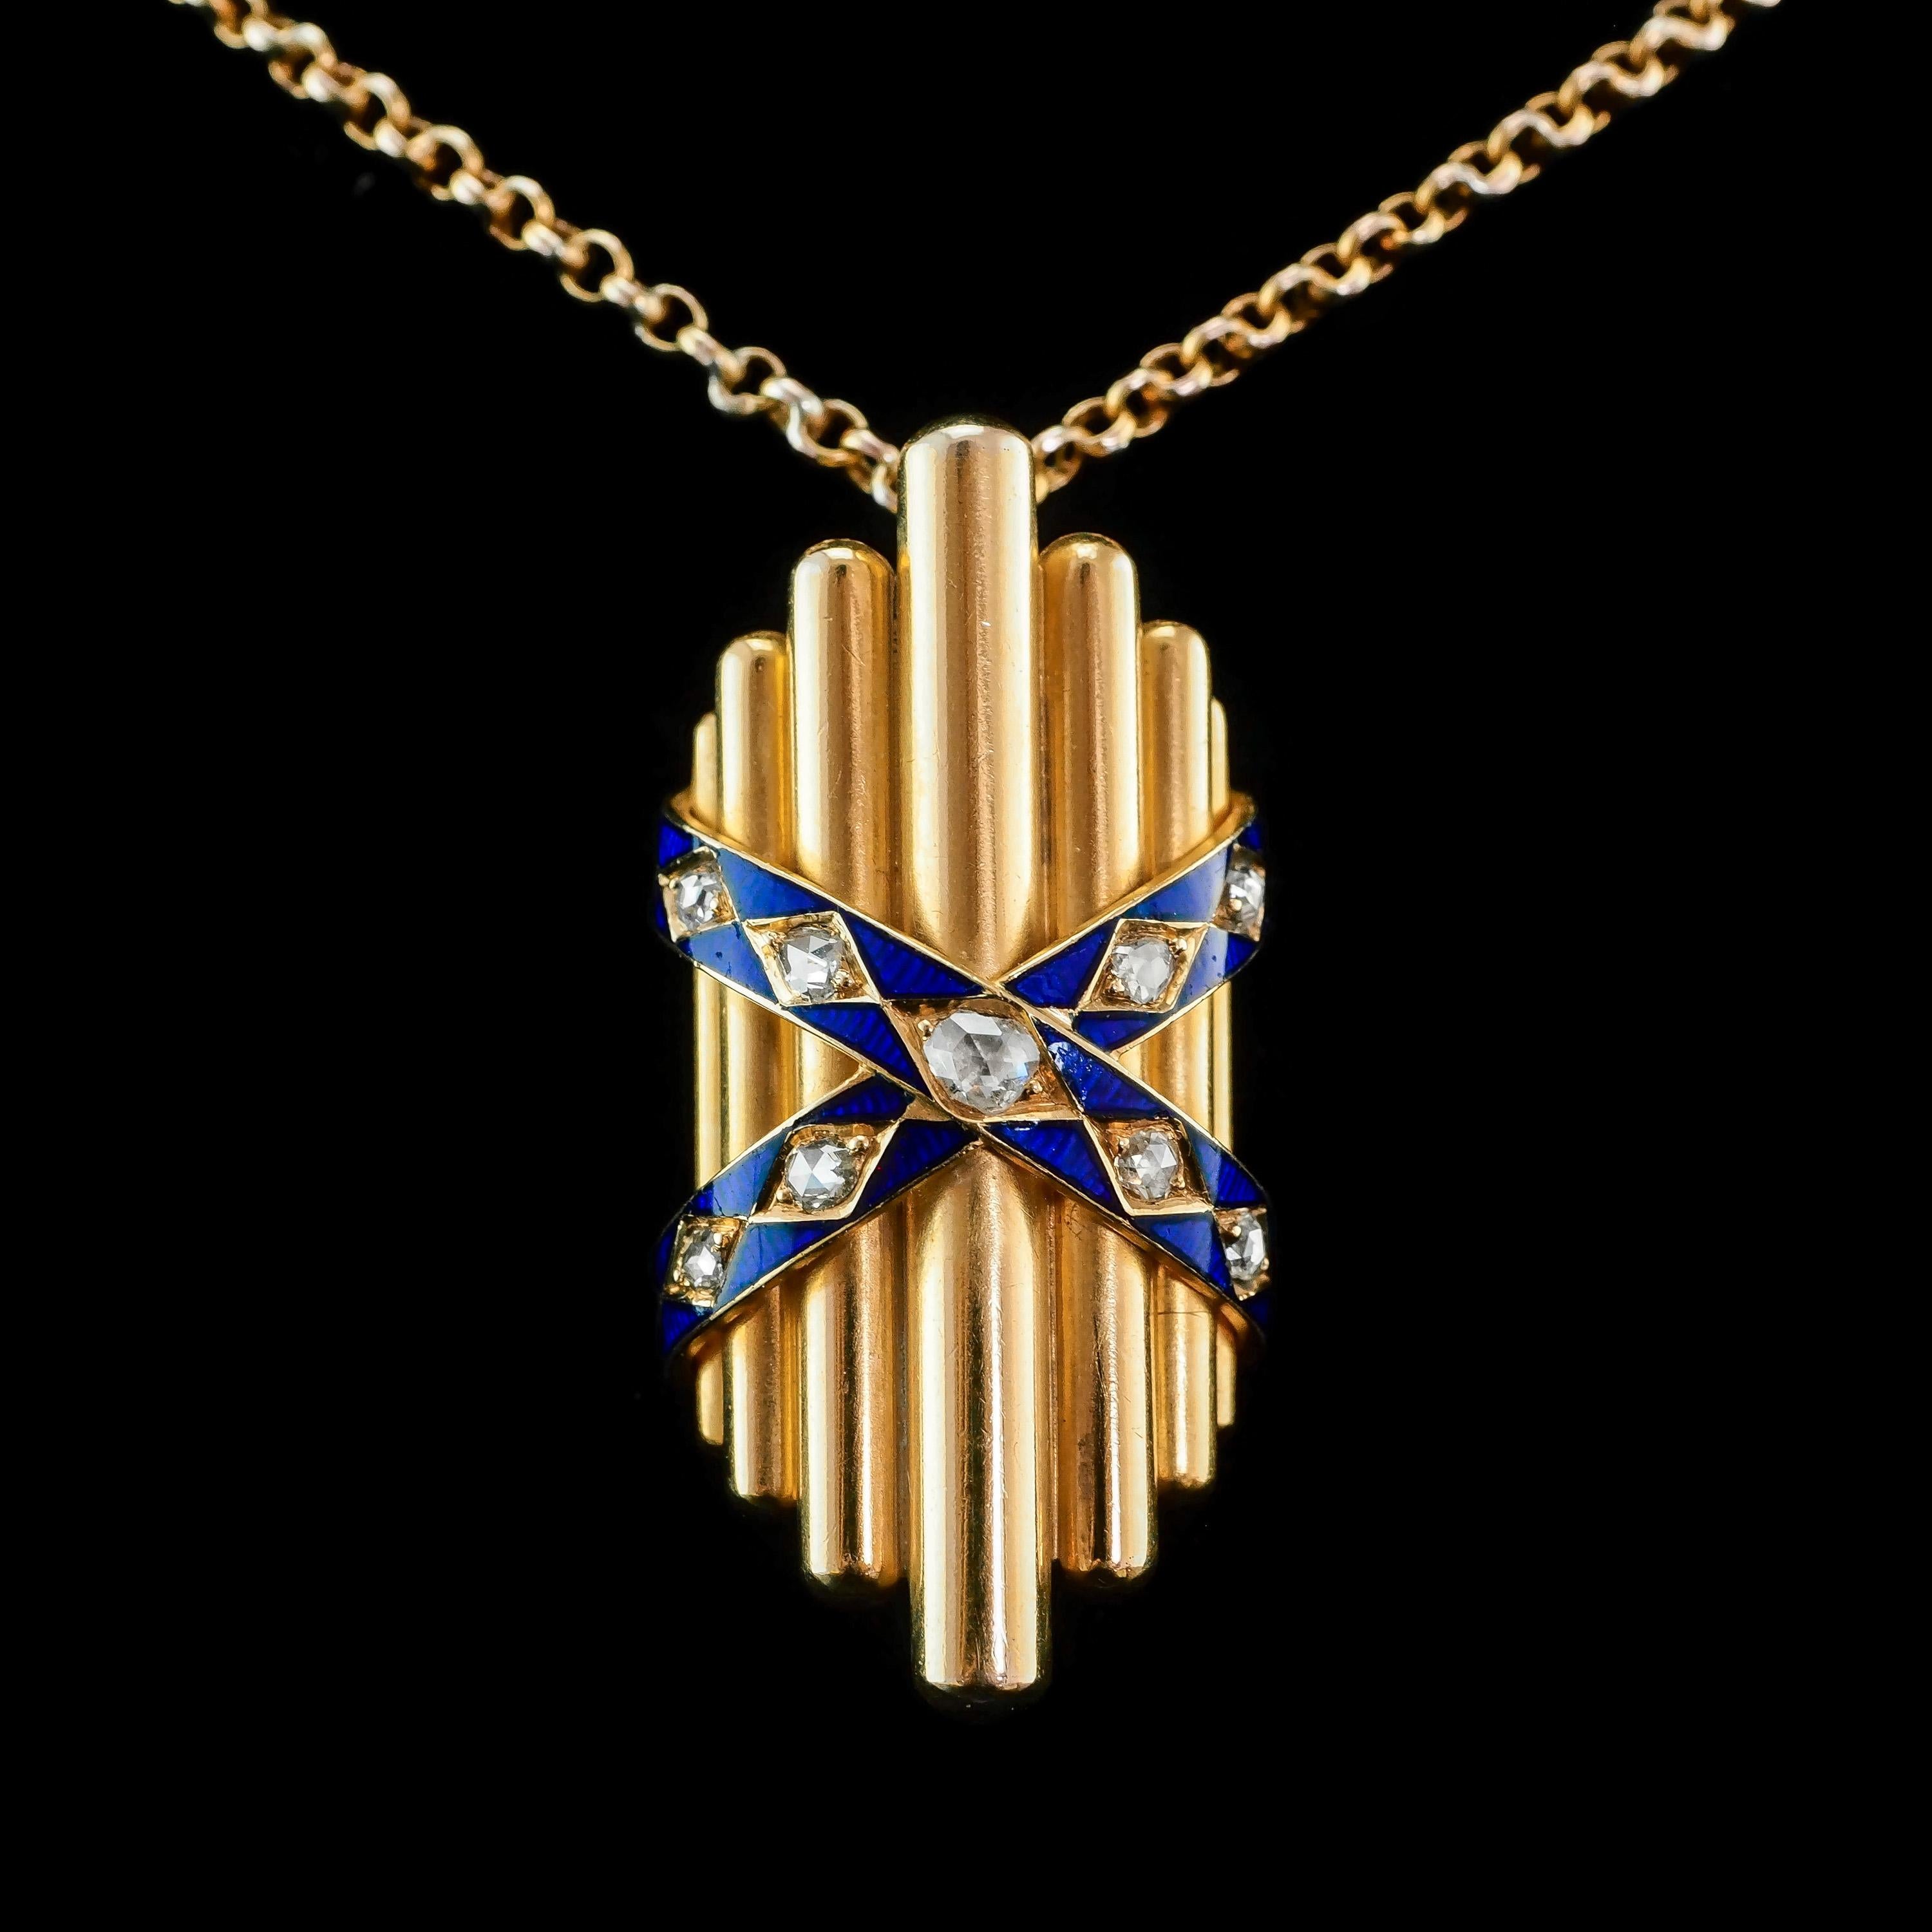 Antique 18K Gold Diamond Rose Cut Pendant Necklace with Blue Enamel - c.1880 For Sale 6